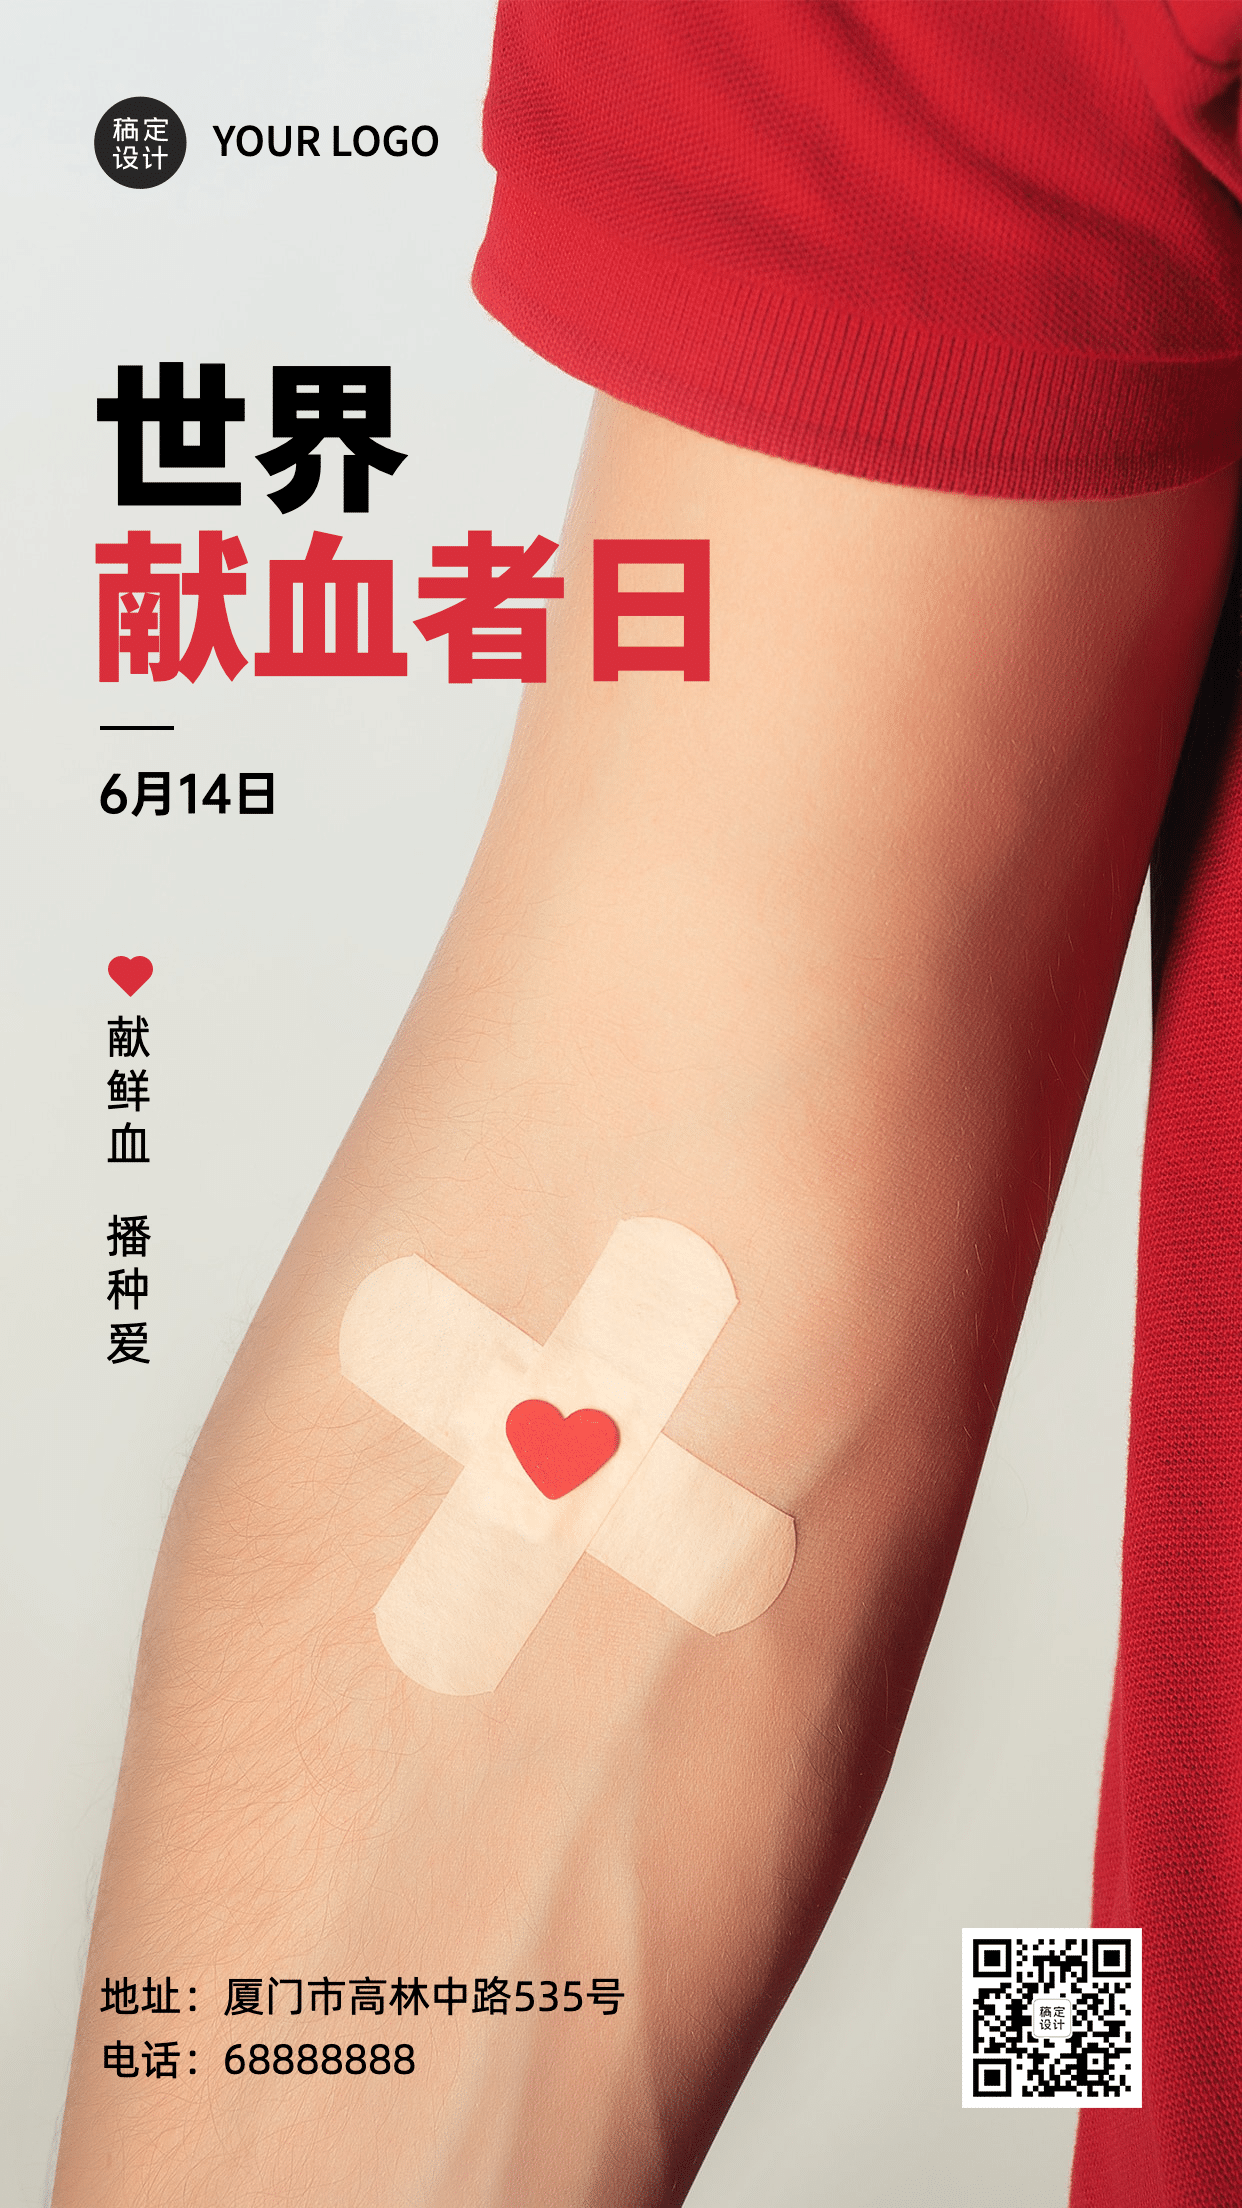 世界献血日公益爱心医疗手机海报预览效果